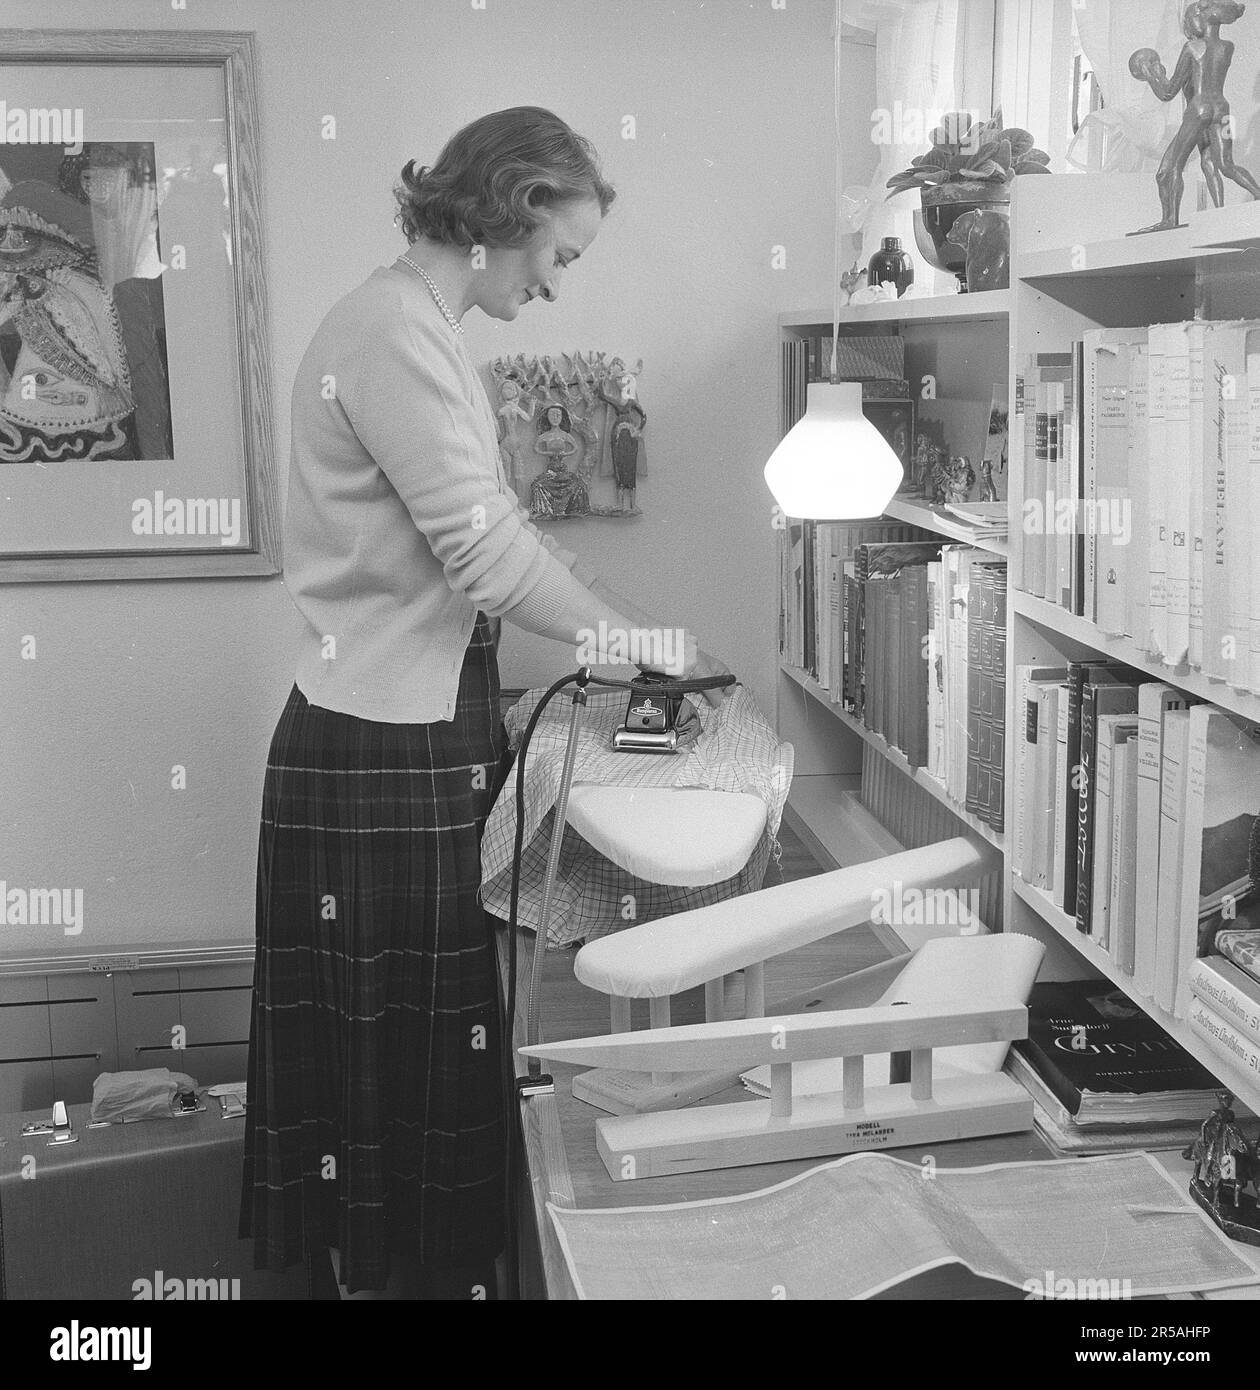 Repassage dans le 1950s. Une femme a vu repasser ses vêtements à la maison. Peut-être avant un voyage de vacances comme sa valise est vue debout sur le sol à côté d'elle. Elle est Mme Blomberg résidant à Lidingö Stockholm. Suède mars 1956 Banque D'Images